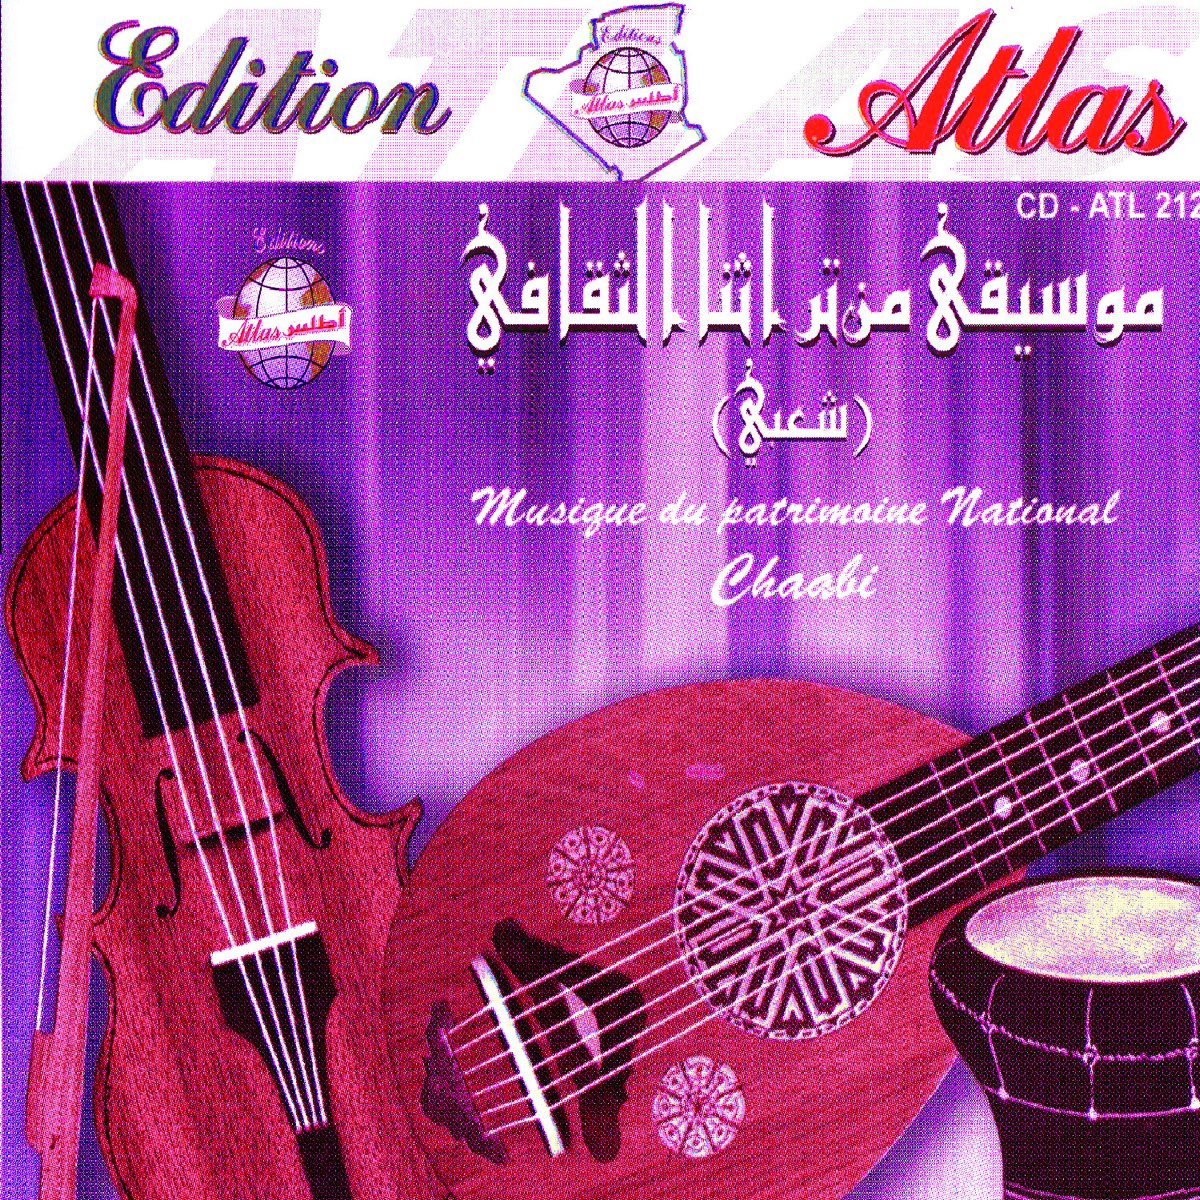 Musique du Patrimoine Chaâbi, Vol. 2 - Album by El Hadj Mohamed El Anka,  Hachemi Guerouabi & Mkhiles - Apple Music